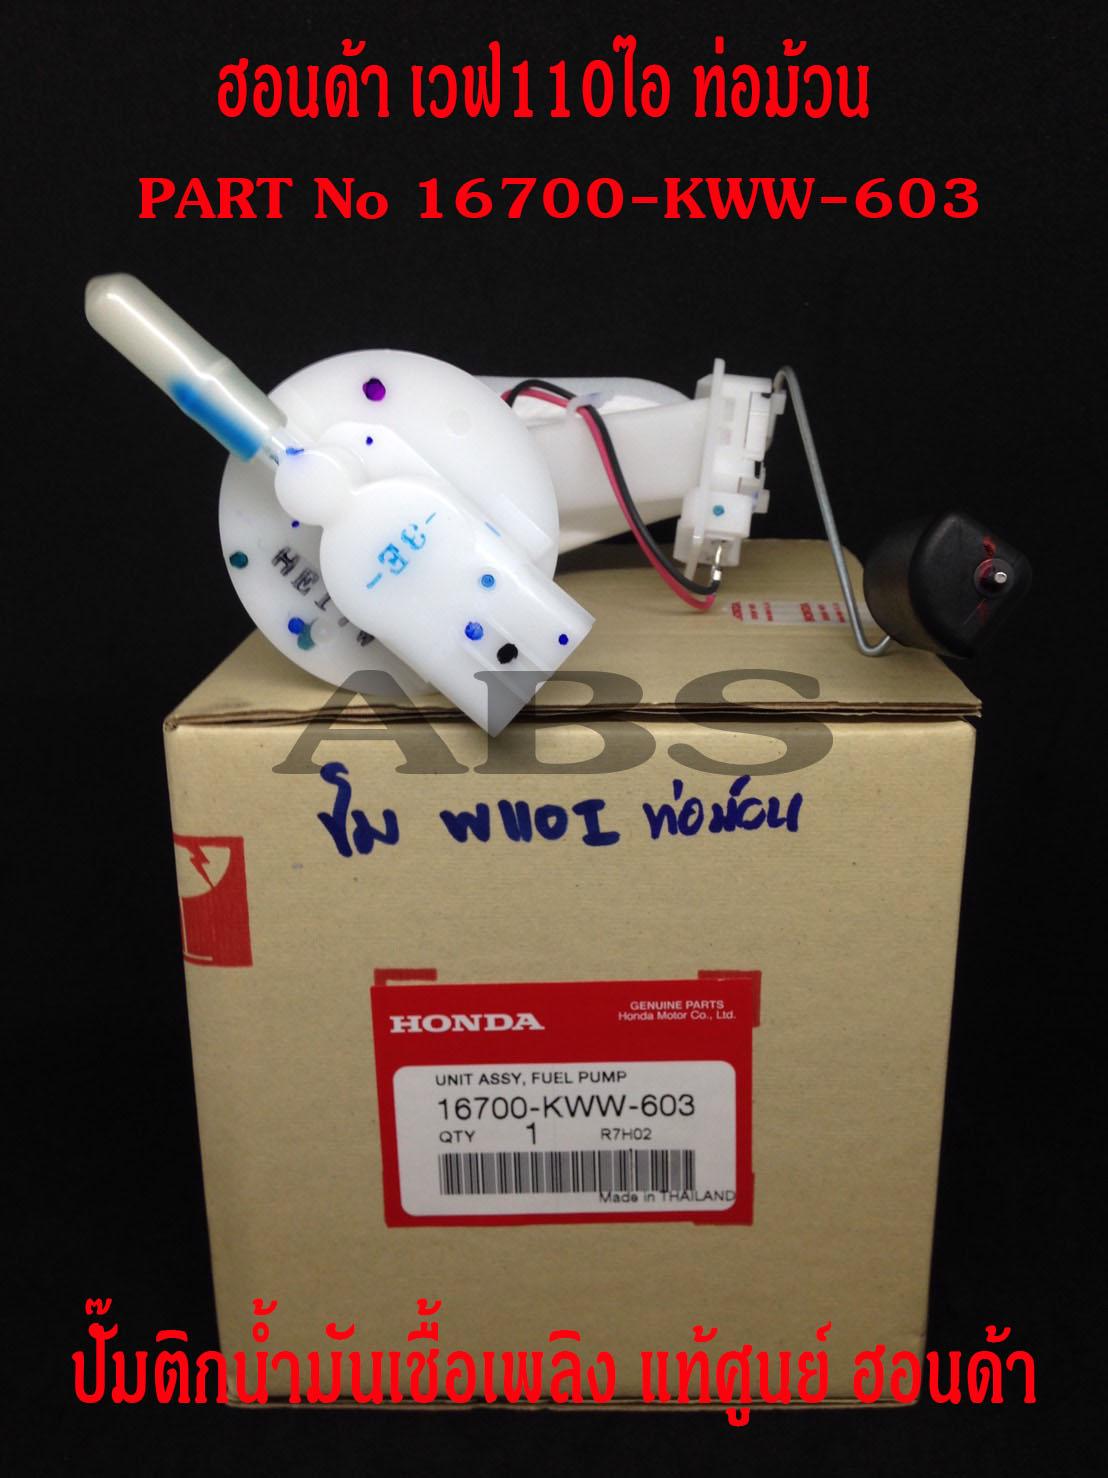 HONDA ปั๊มน้ำมันเชื้อเพลิง (ปั๊มติ๊ก) สำหรับ เวฟ110ไอ ท่อม้วน ของแท้ศูนย์ 16700-KWW-603